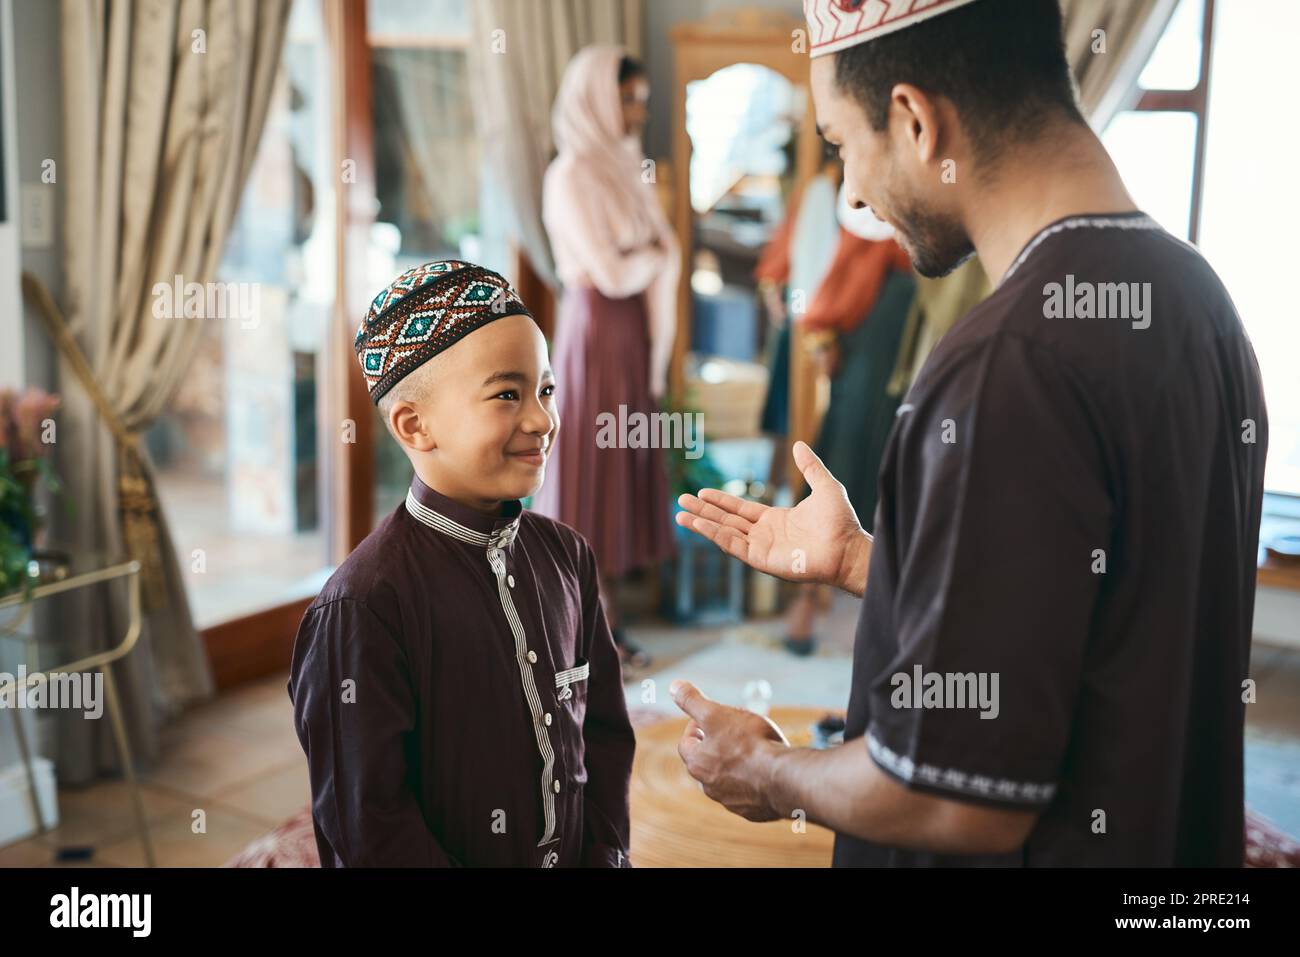 Muslimischer Vater und Sohn, die sich während eines religiösen Feiertages zu Hause im Wohnzimmer unterhalten und sich anfreunden. Süßer, lächelnder und glücklicher islamischer Junge, der Ratschläge von seinem Vater hört, während er ein traditionelles Outfit trägt Stockfoto